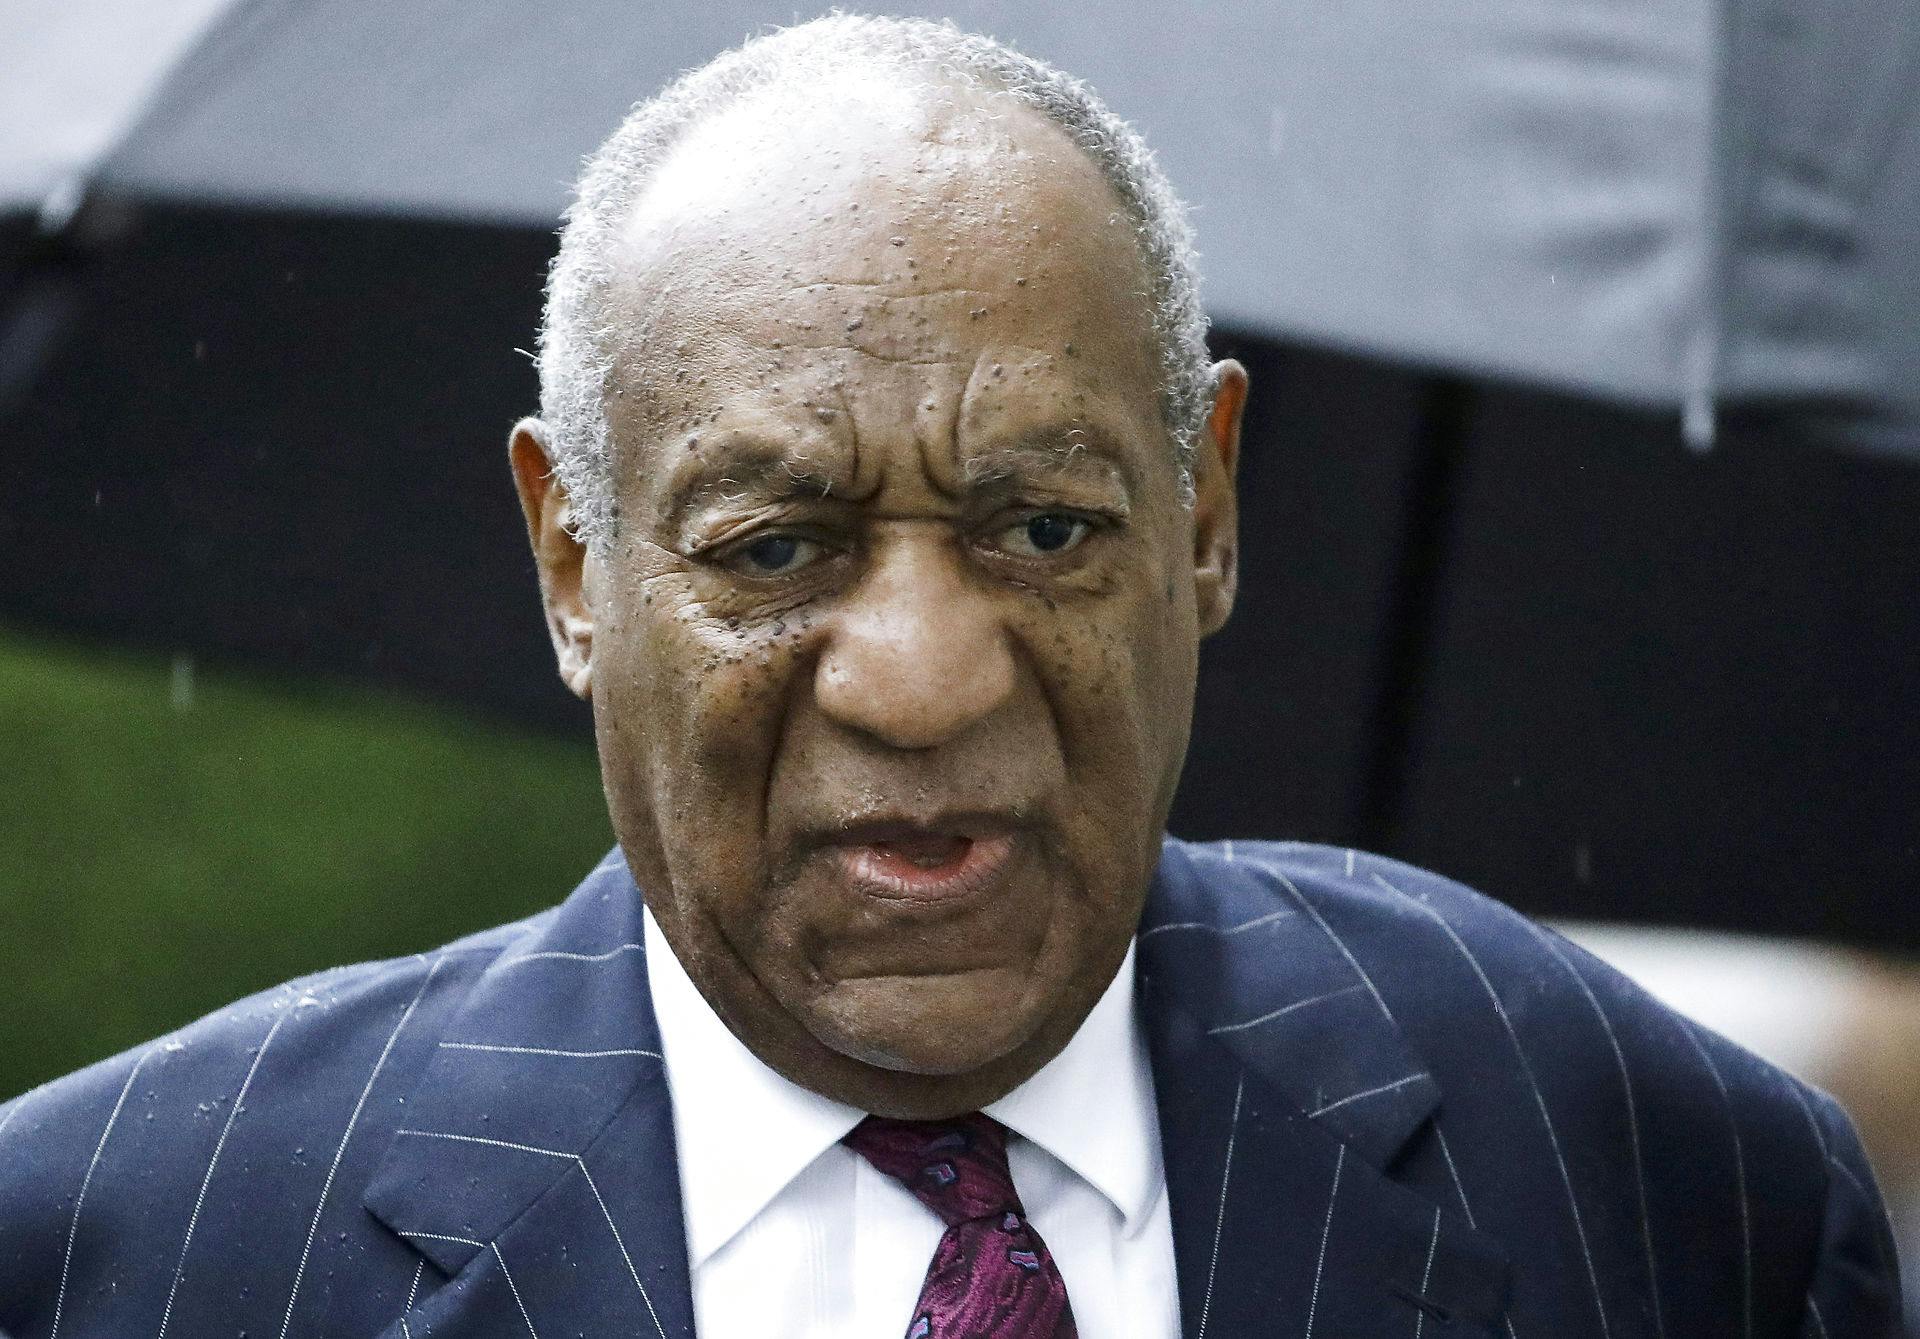 Derouten er nærmest uendelig for den tidligere så populære skuespiller Bill Cosby. Nu er fem kvinder stået frem med flere anklager om seksuelle overgreb begået af den nu 85-årige mand fra 60'erne og frem.